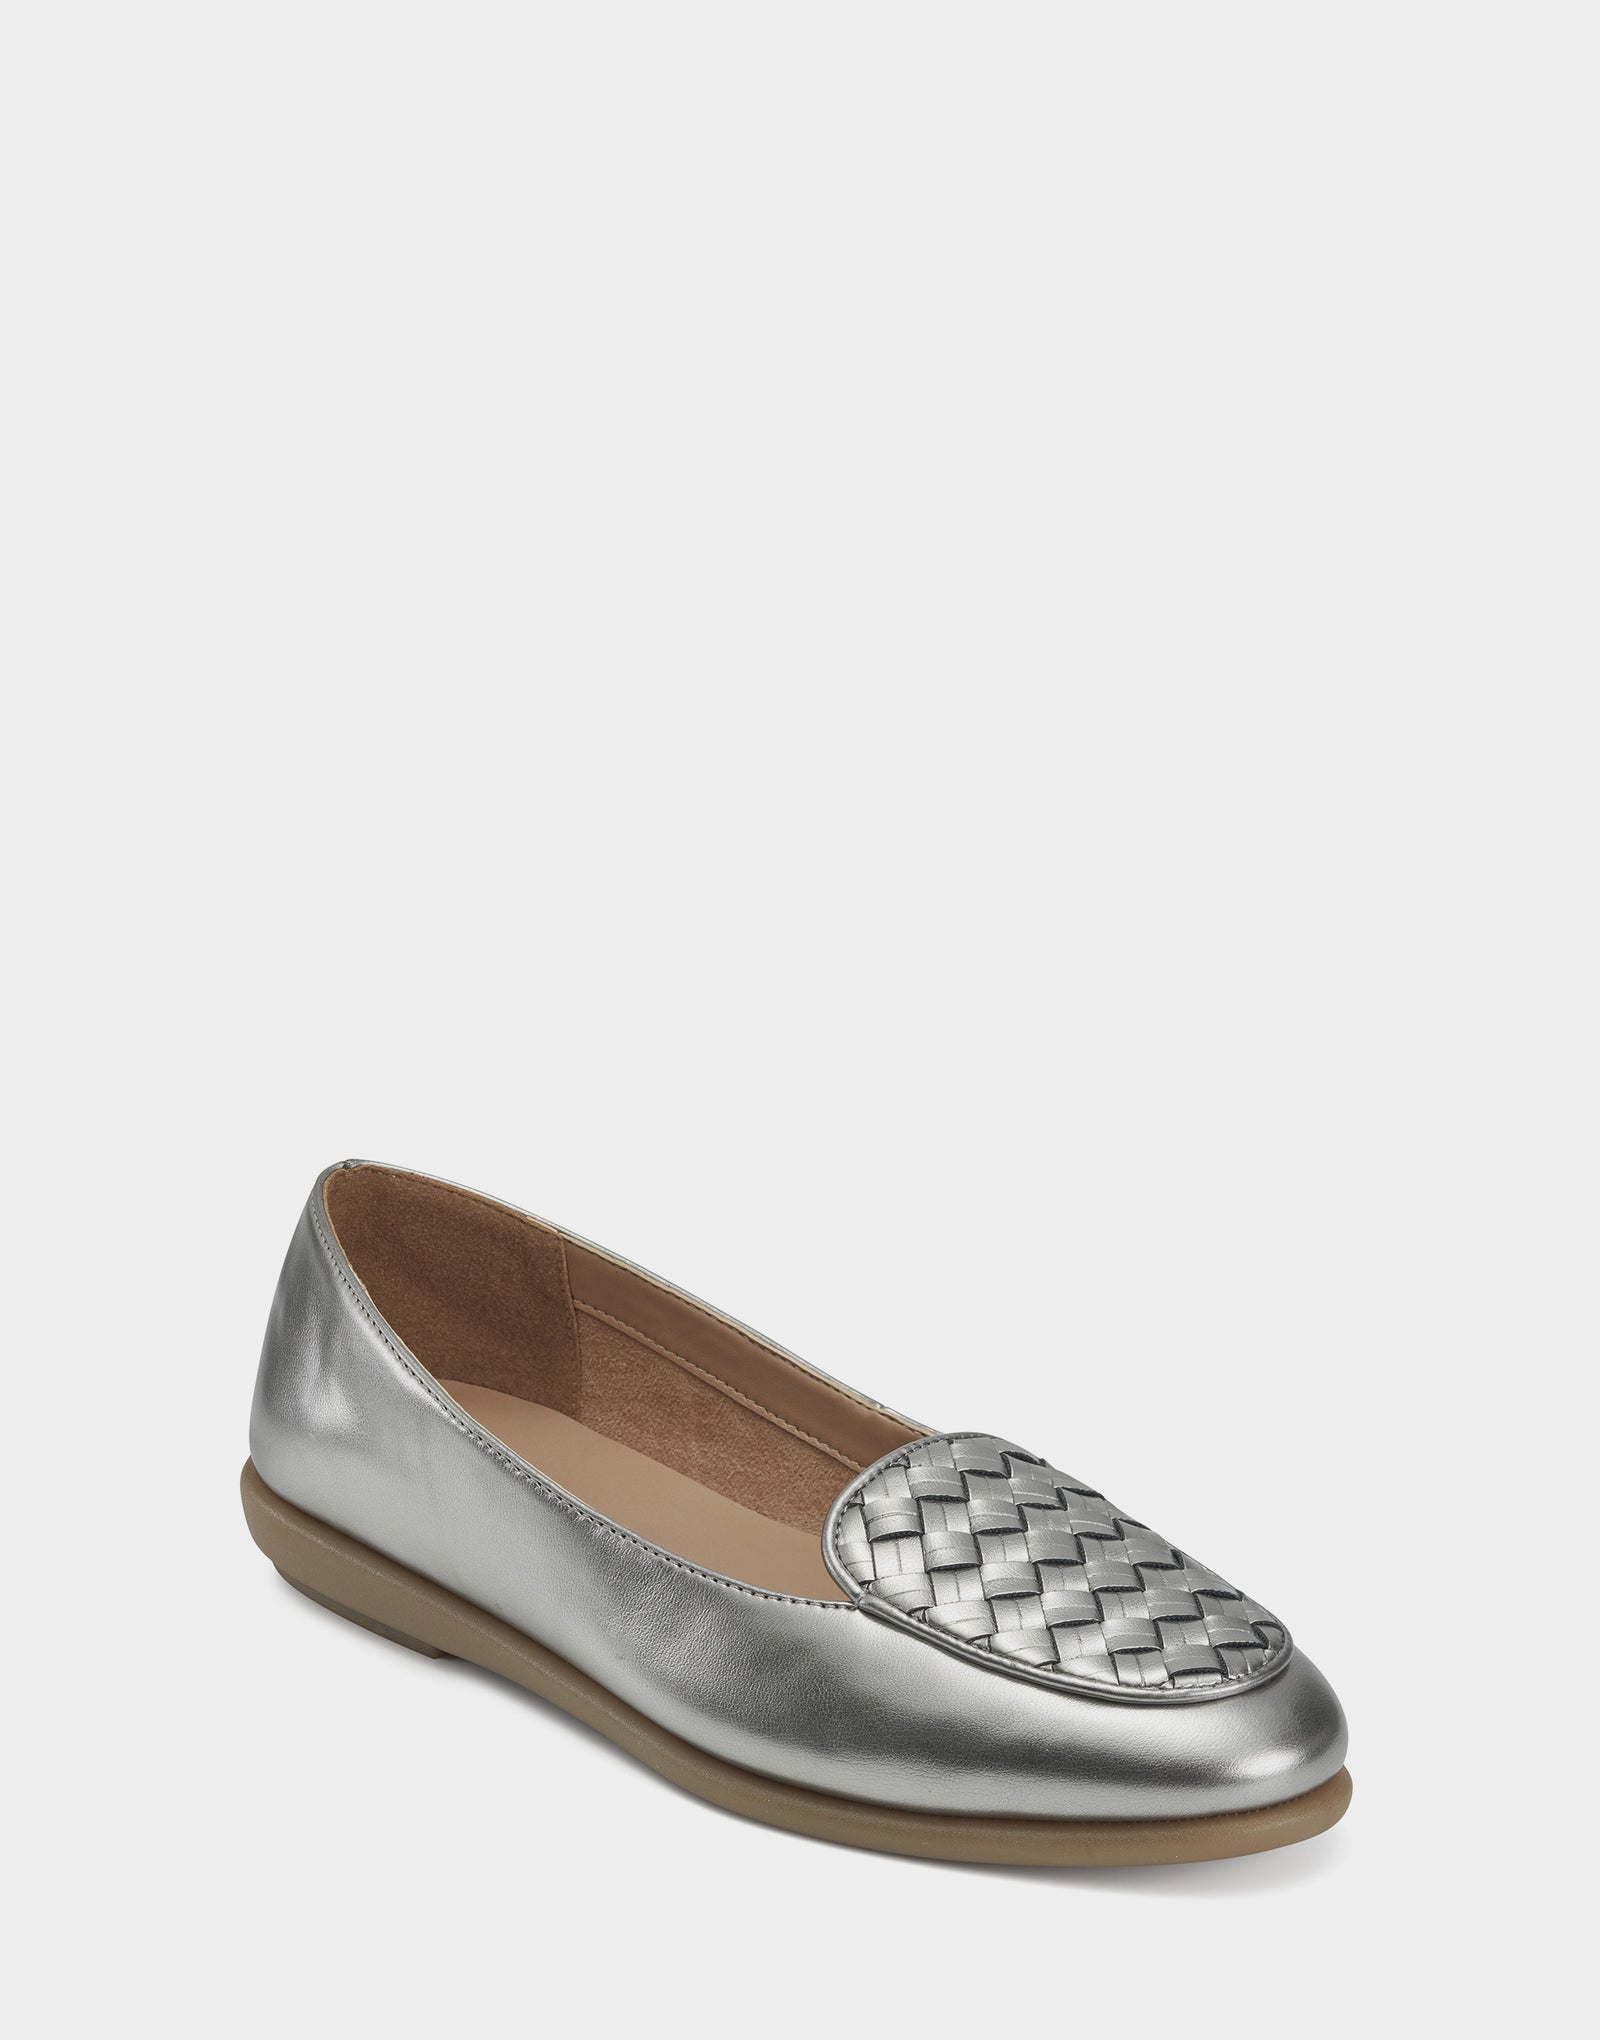 Women's Loafer in Silver